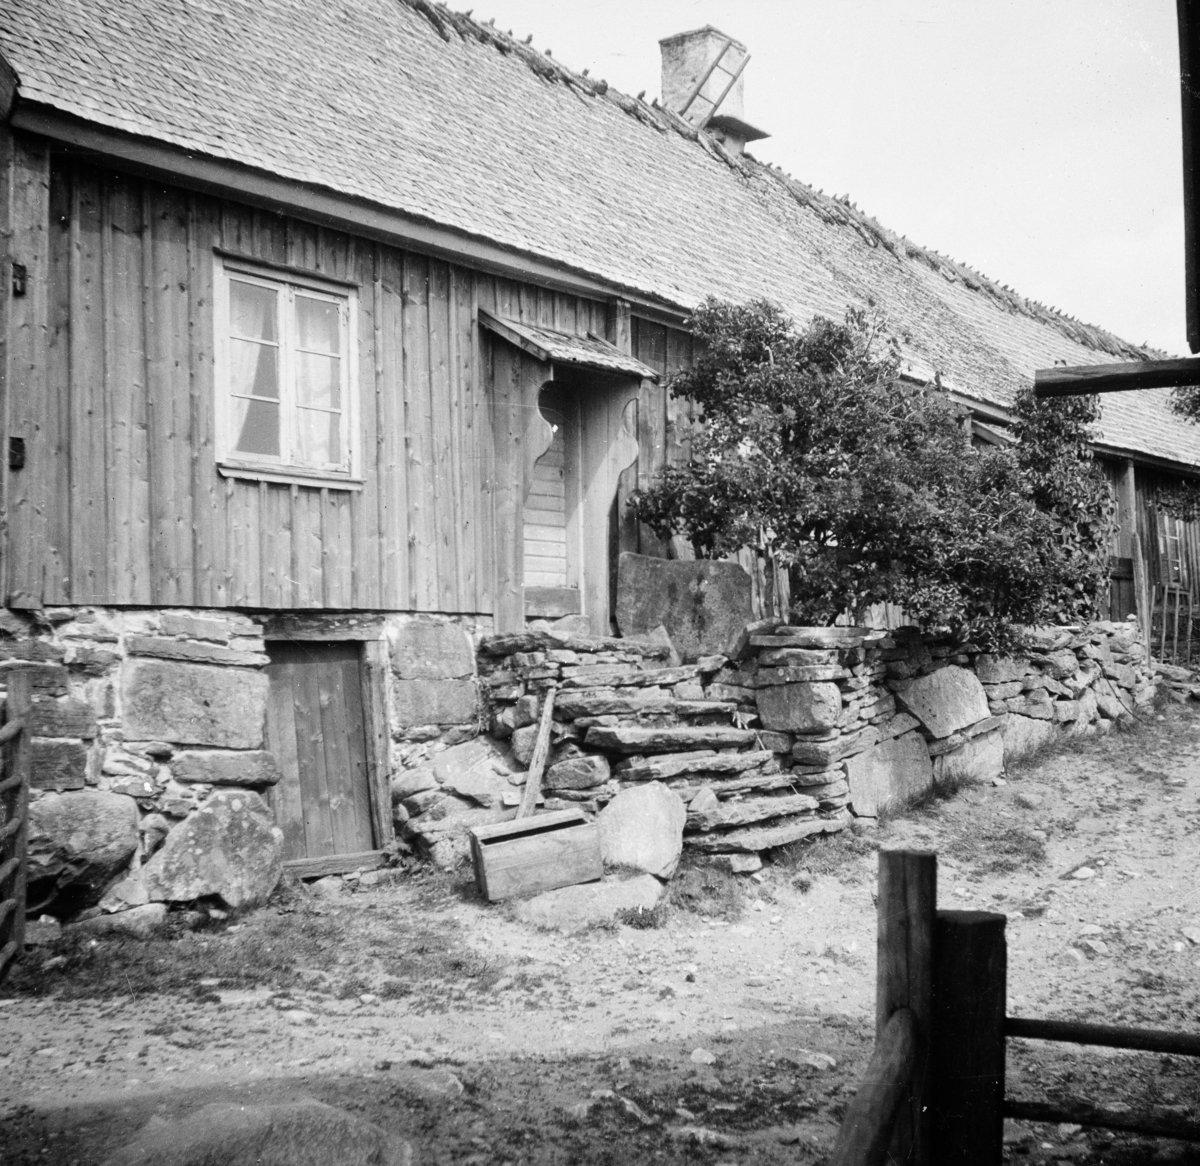 Måsahägnad i Nösslinge, Halland
Exteriör

Svensk arkitektur: kyrkor, herrgårdar med mera fotograferade av Arkitekturminnesföreningen 1908-23.